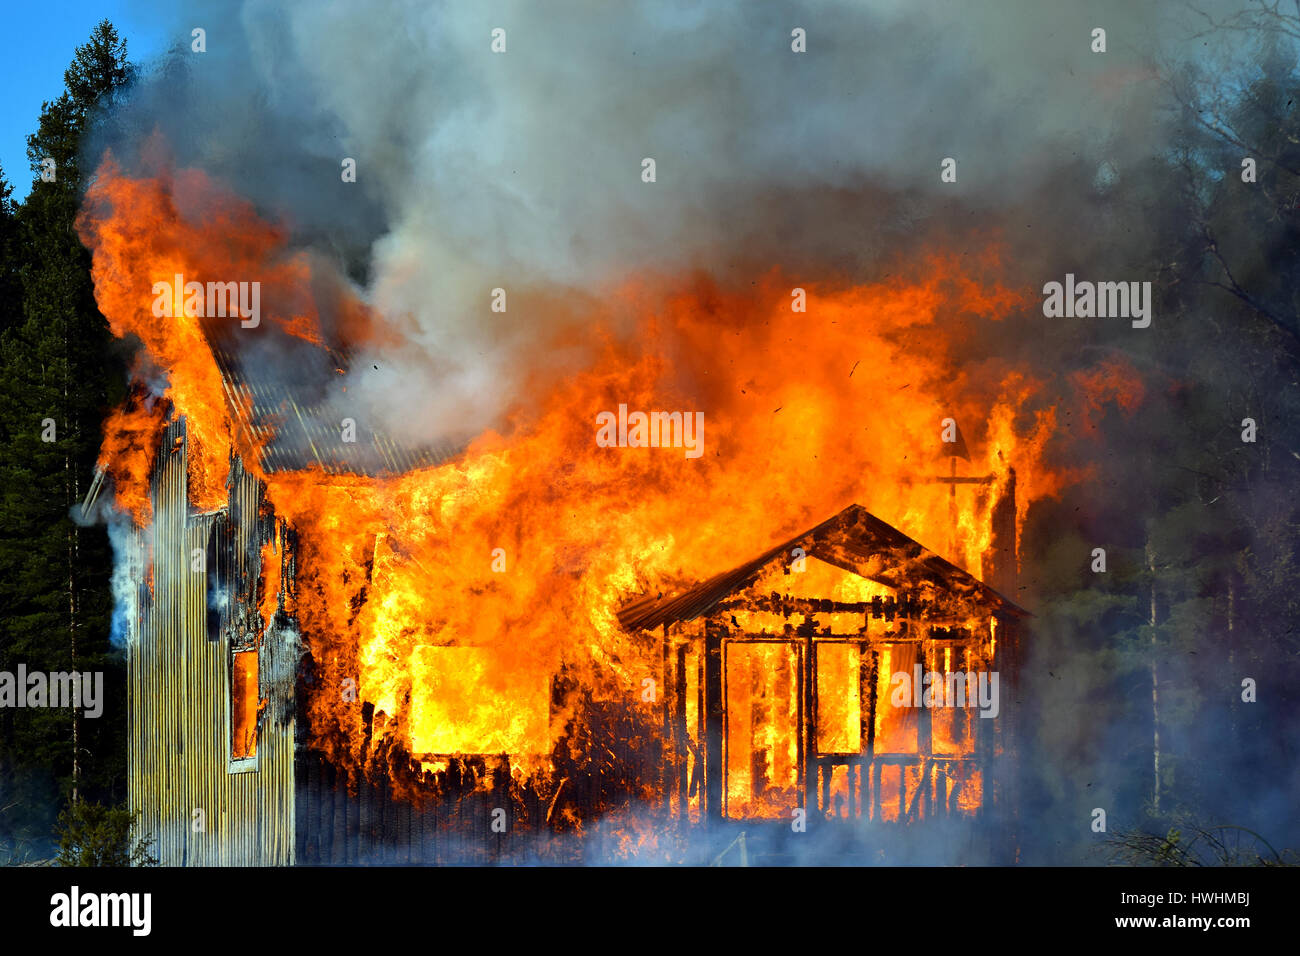 Burning house Stock Photo